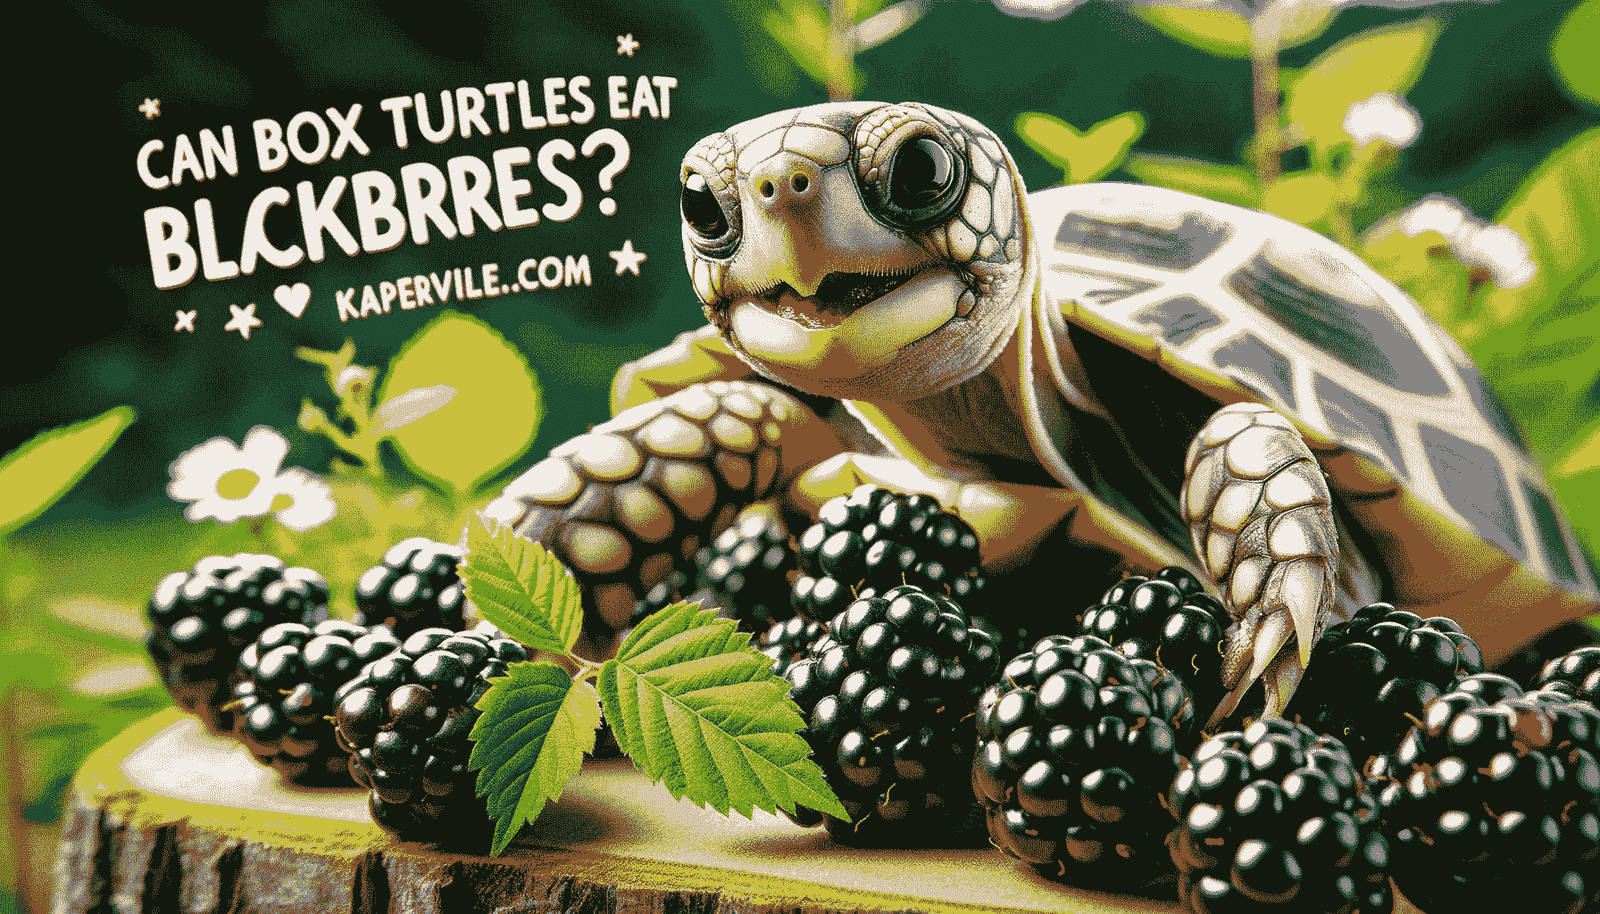 Can Box Turtles Eat Blackberries